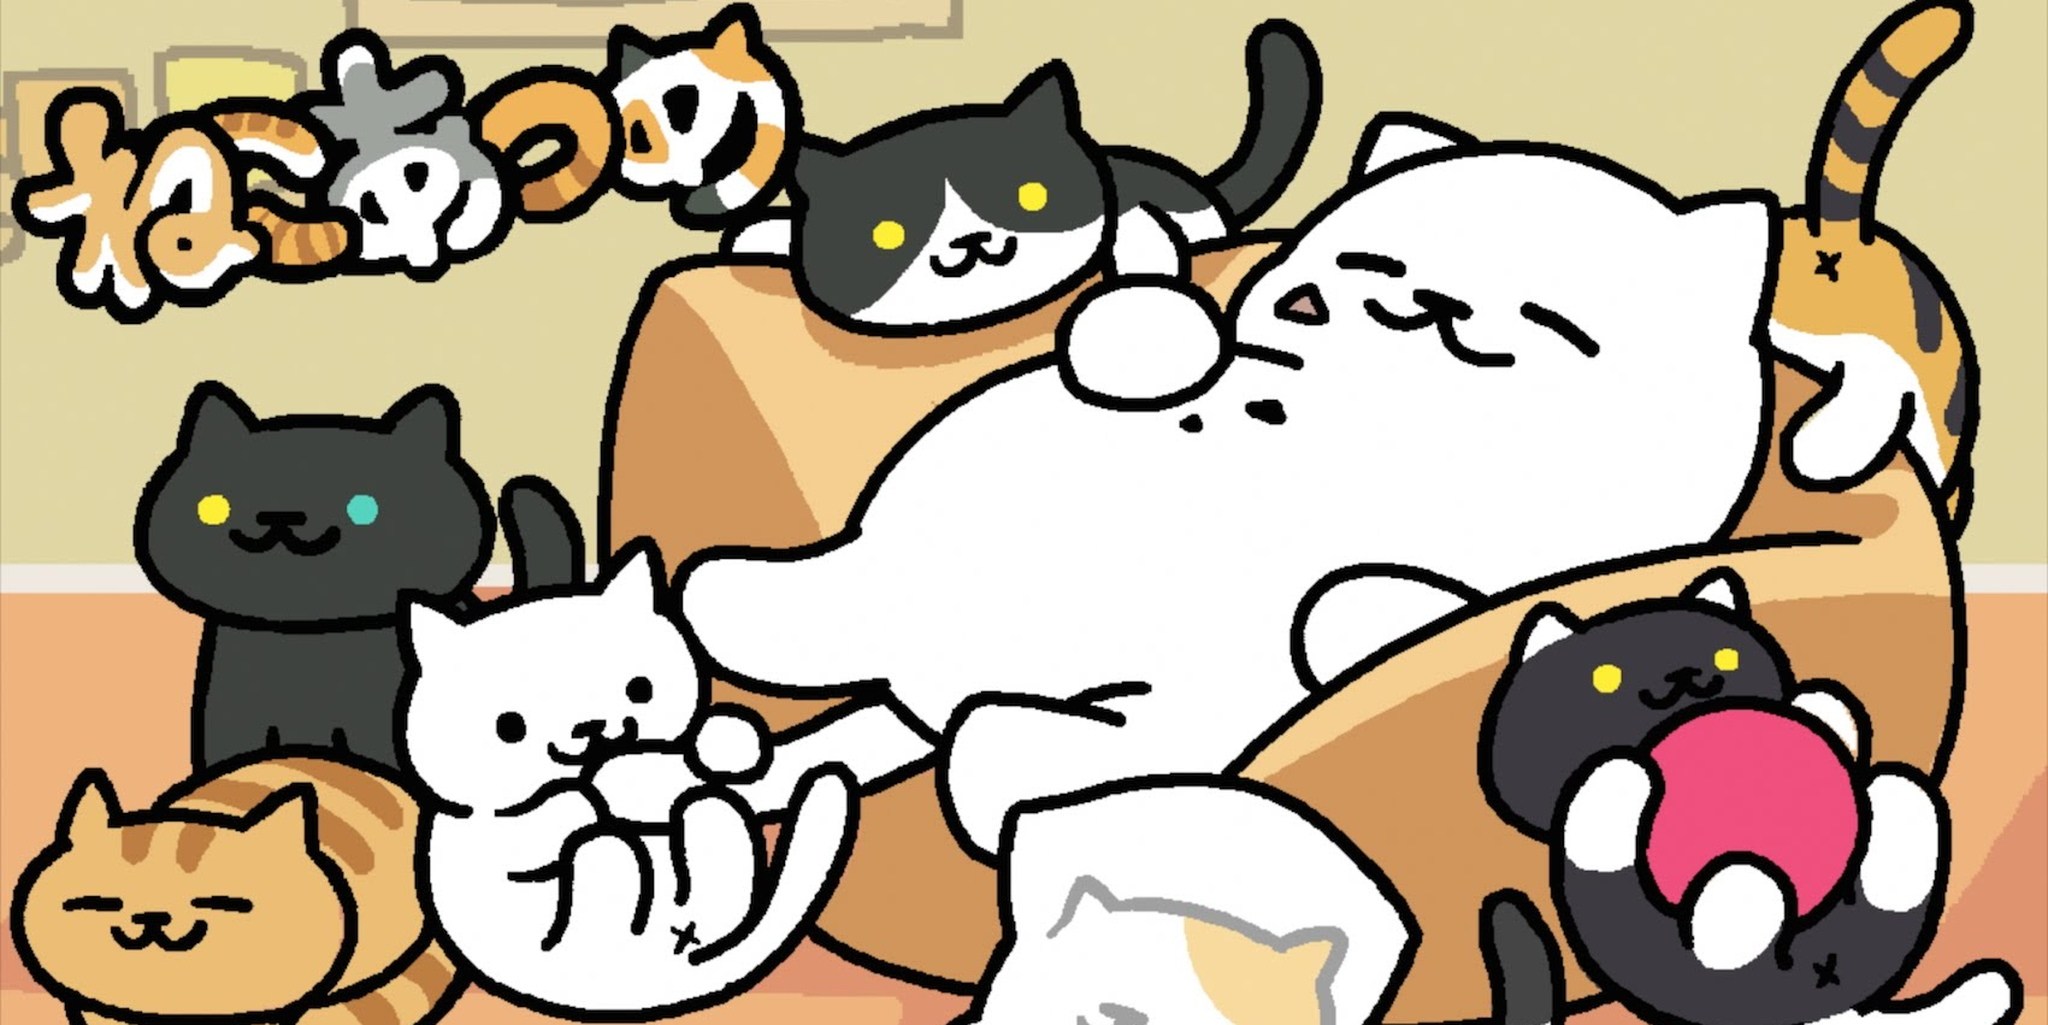 Включи видео игры котики. Neko Atsume: Kitty Collector. Игра котики. Котик из игры. Милые игры про котиков.